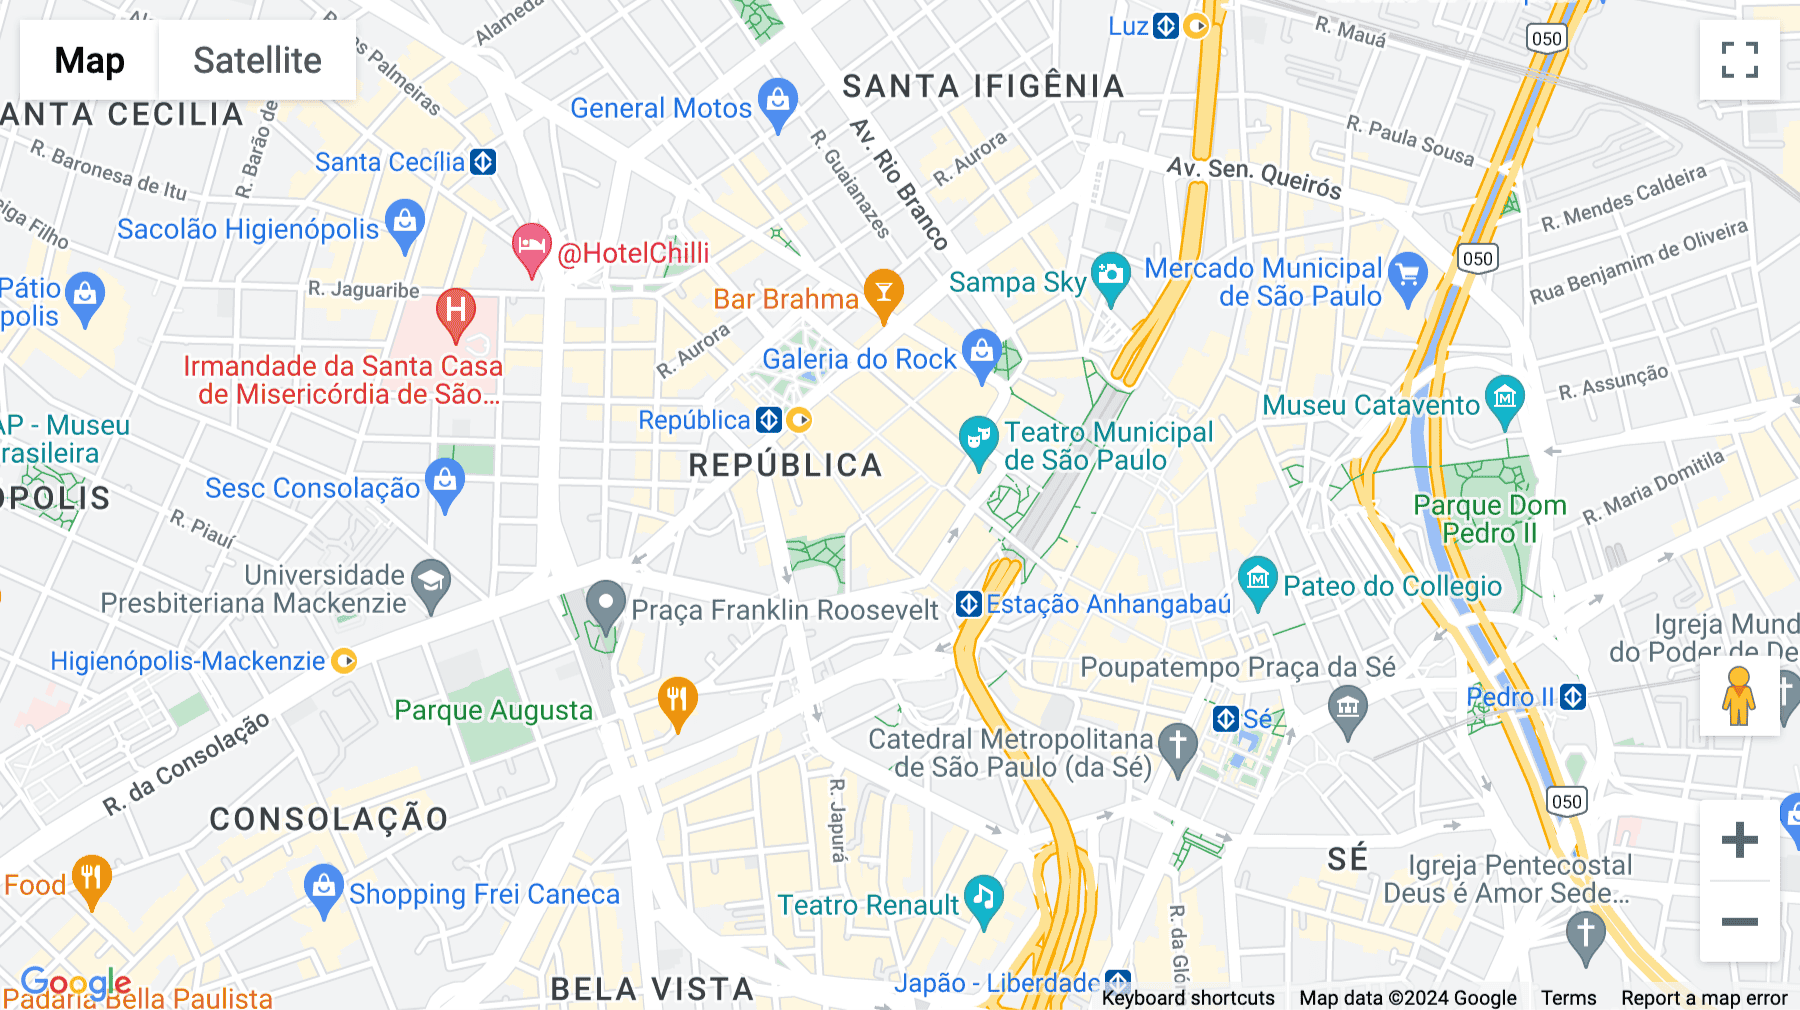 Click for interative map of Rua Barão de Itapetininga 37 bl 3, Bairro República, Sao Paulo, Sao Paulo